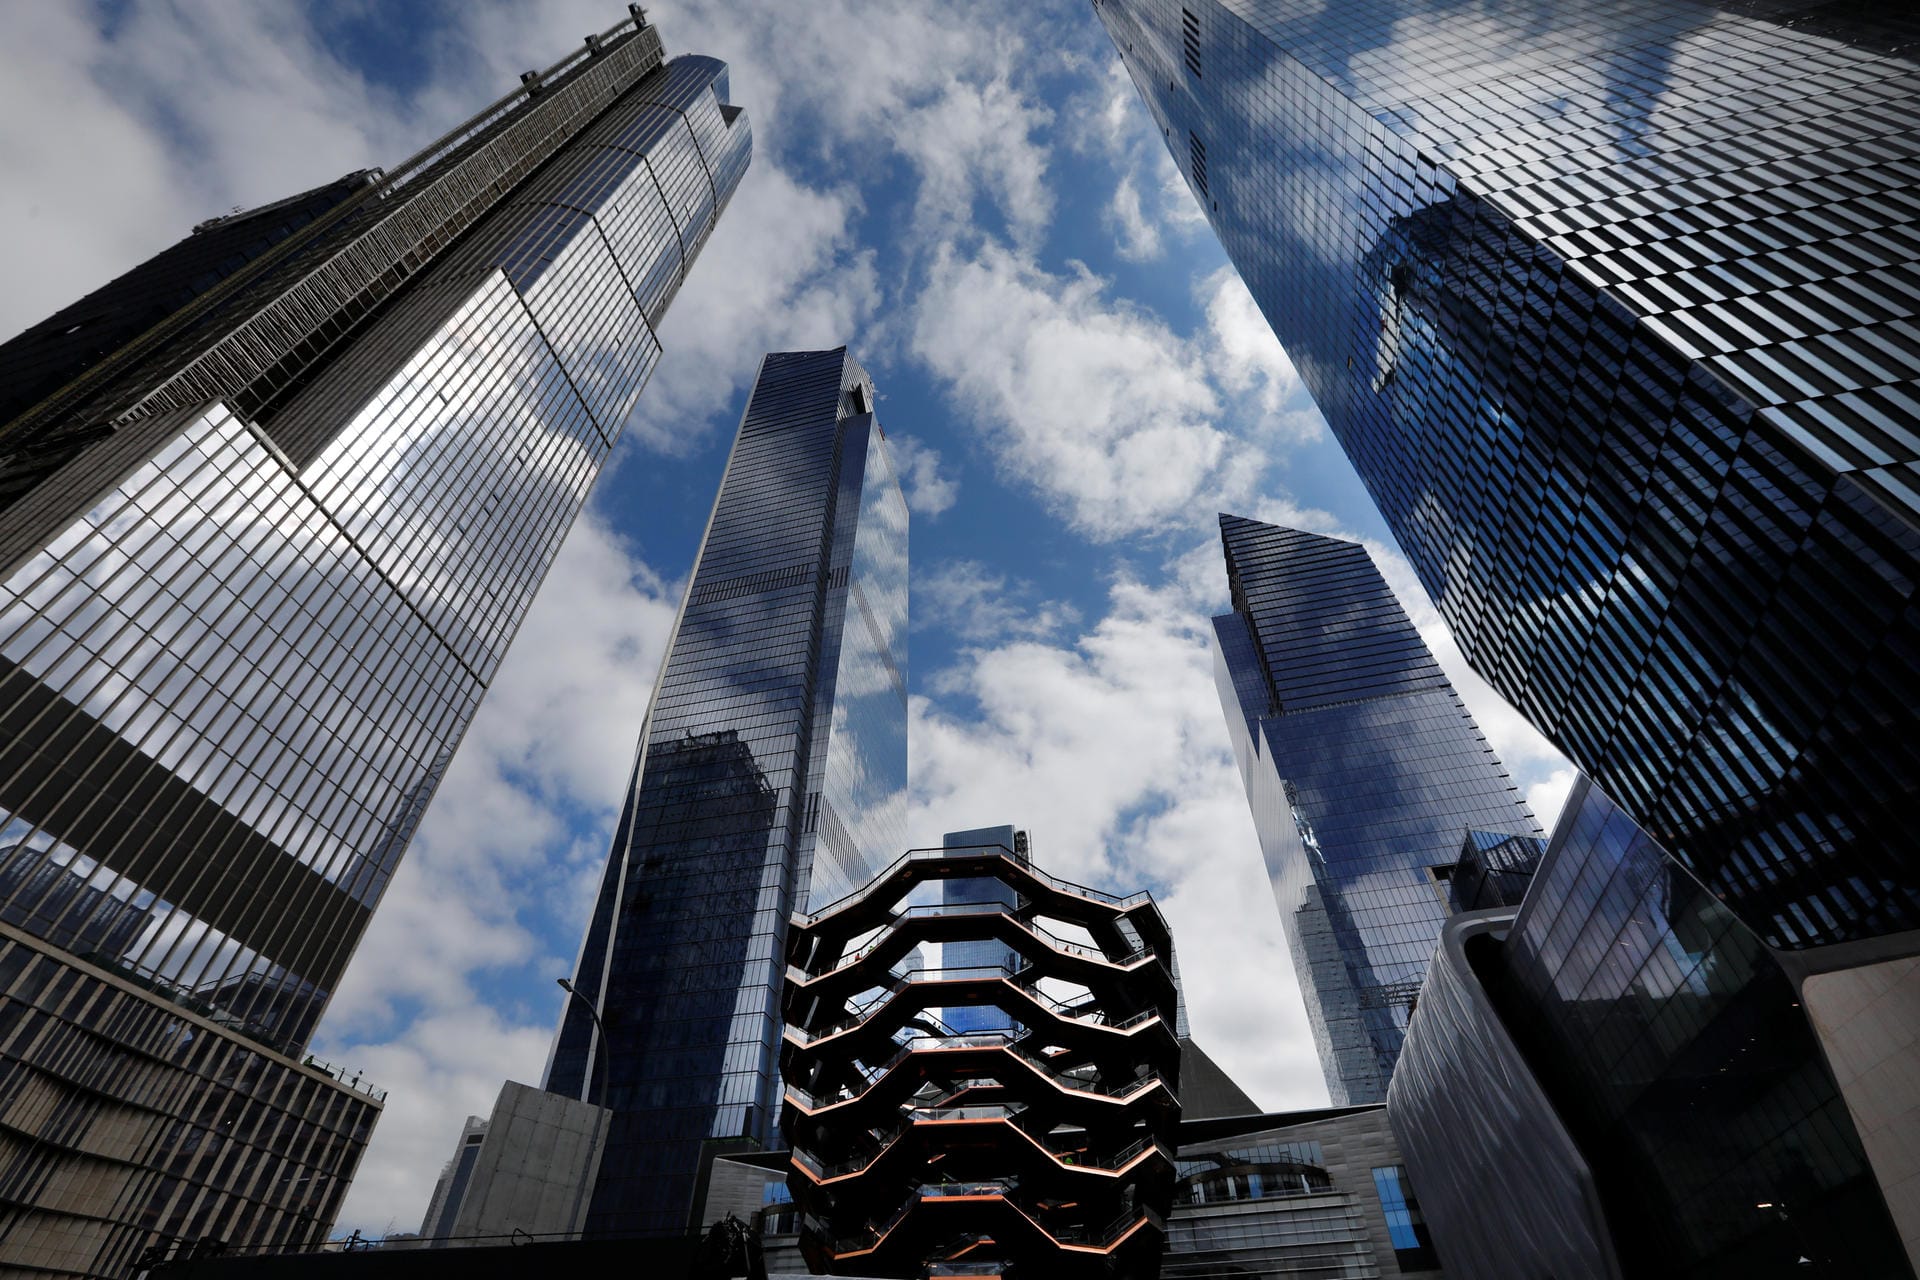 Hudson Yards: Die Idee zu dem Bauprojekt kam nach den Terroranschlägen des 11. Septembers 2011 um Manhattan wirtschaftlich wiederzubeleben.